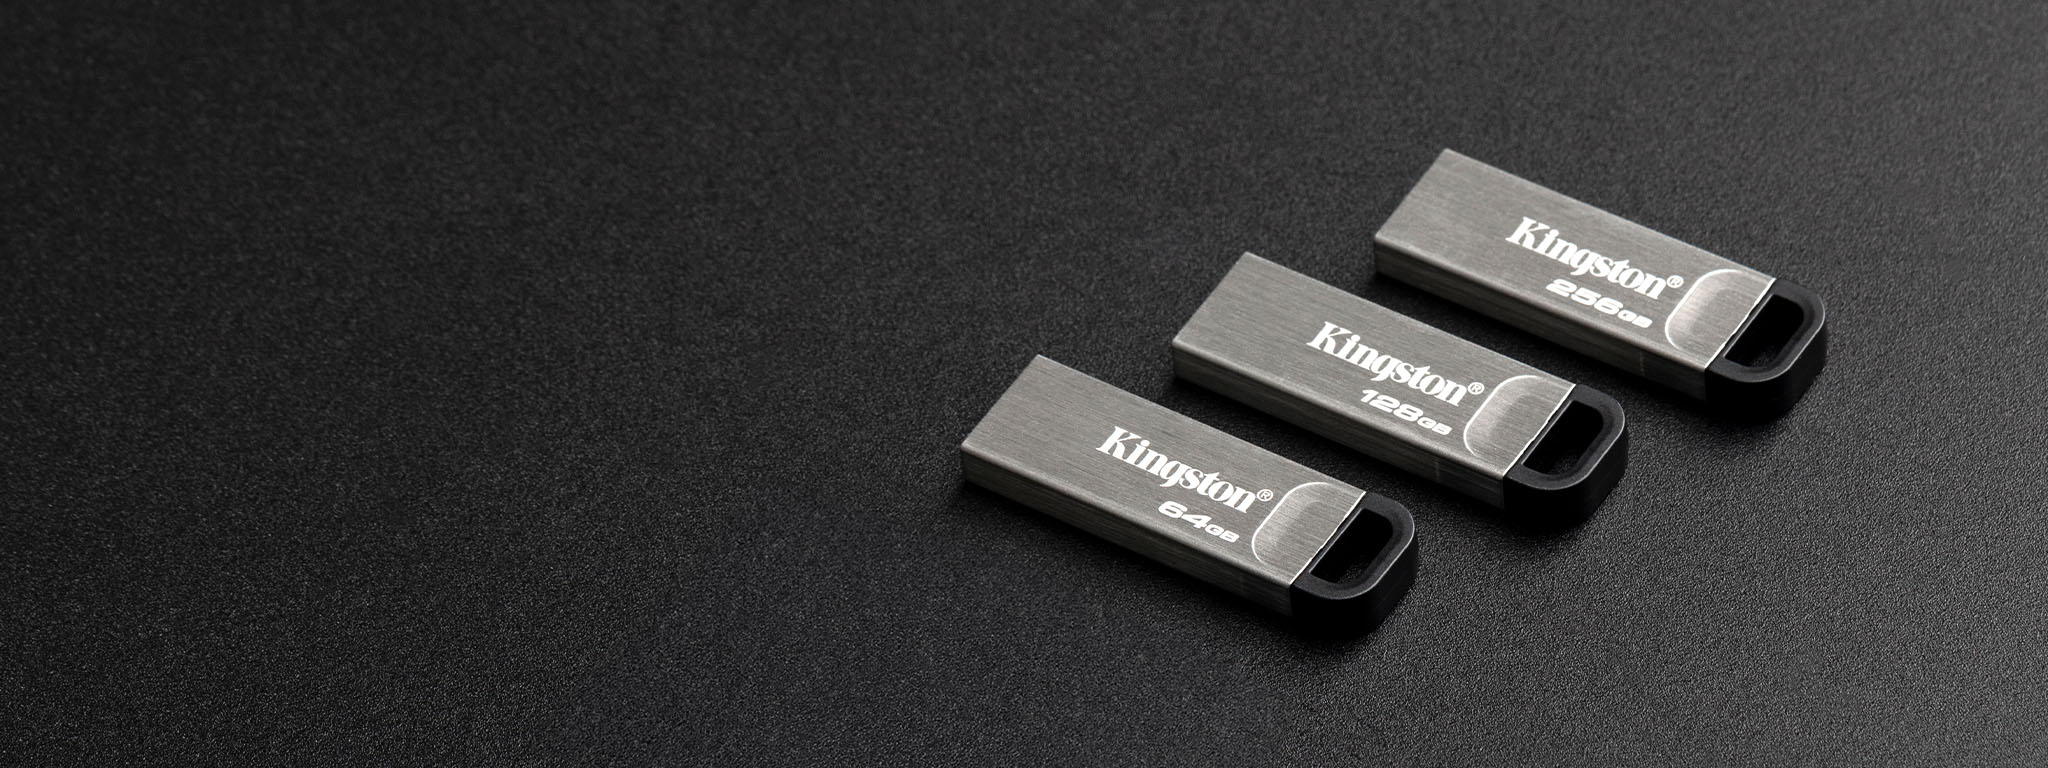 四个不同容量的 DT Kyson USB 闪存盘位于黑色平面的俯视图